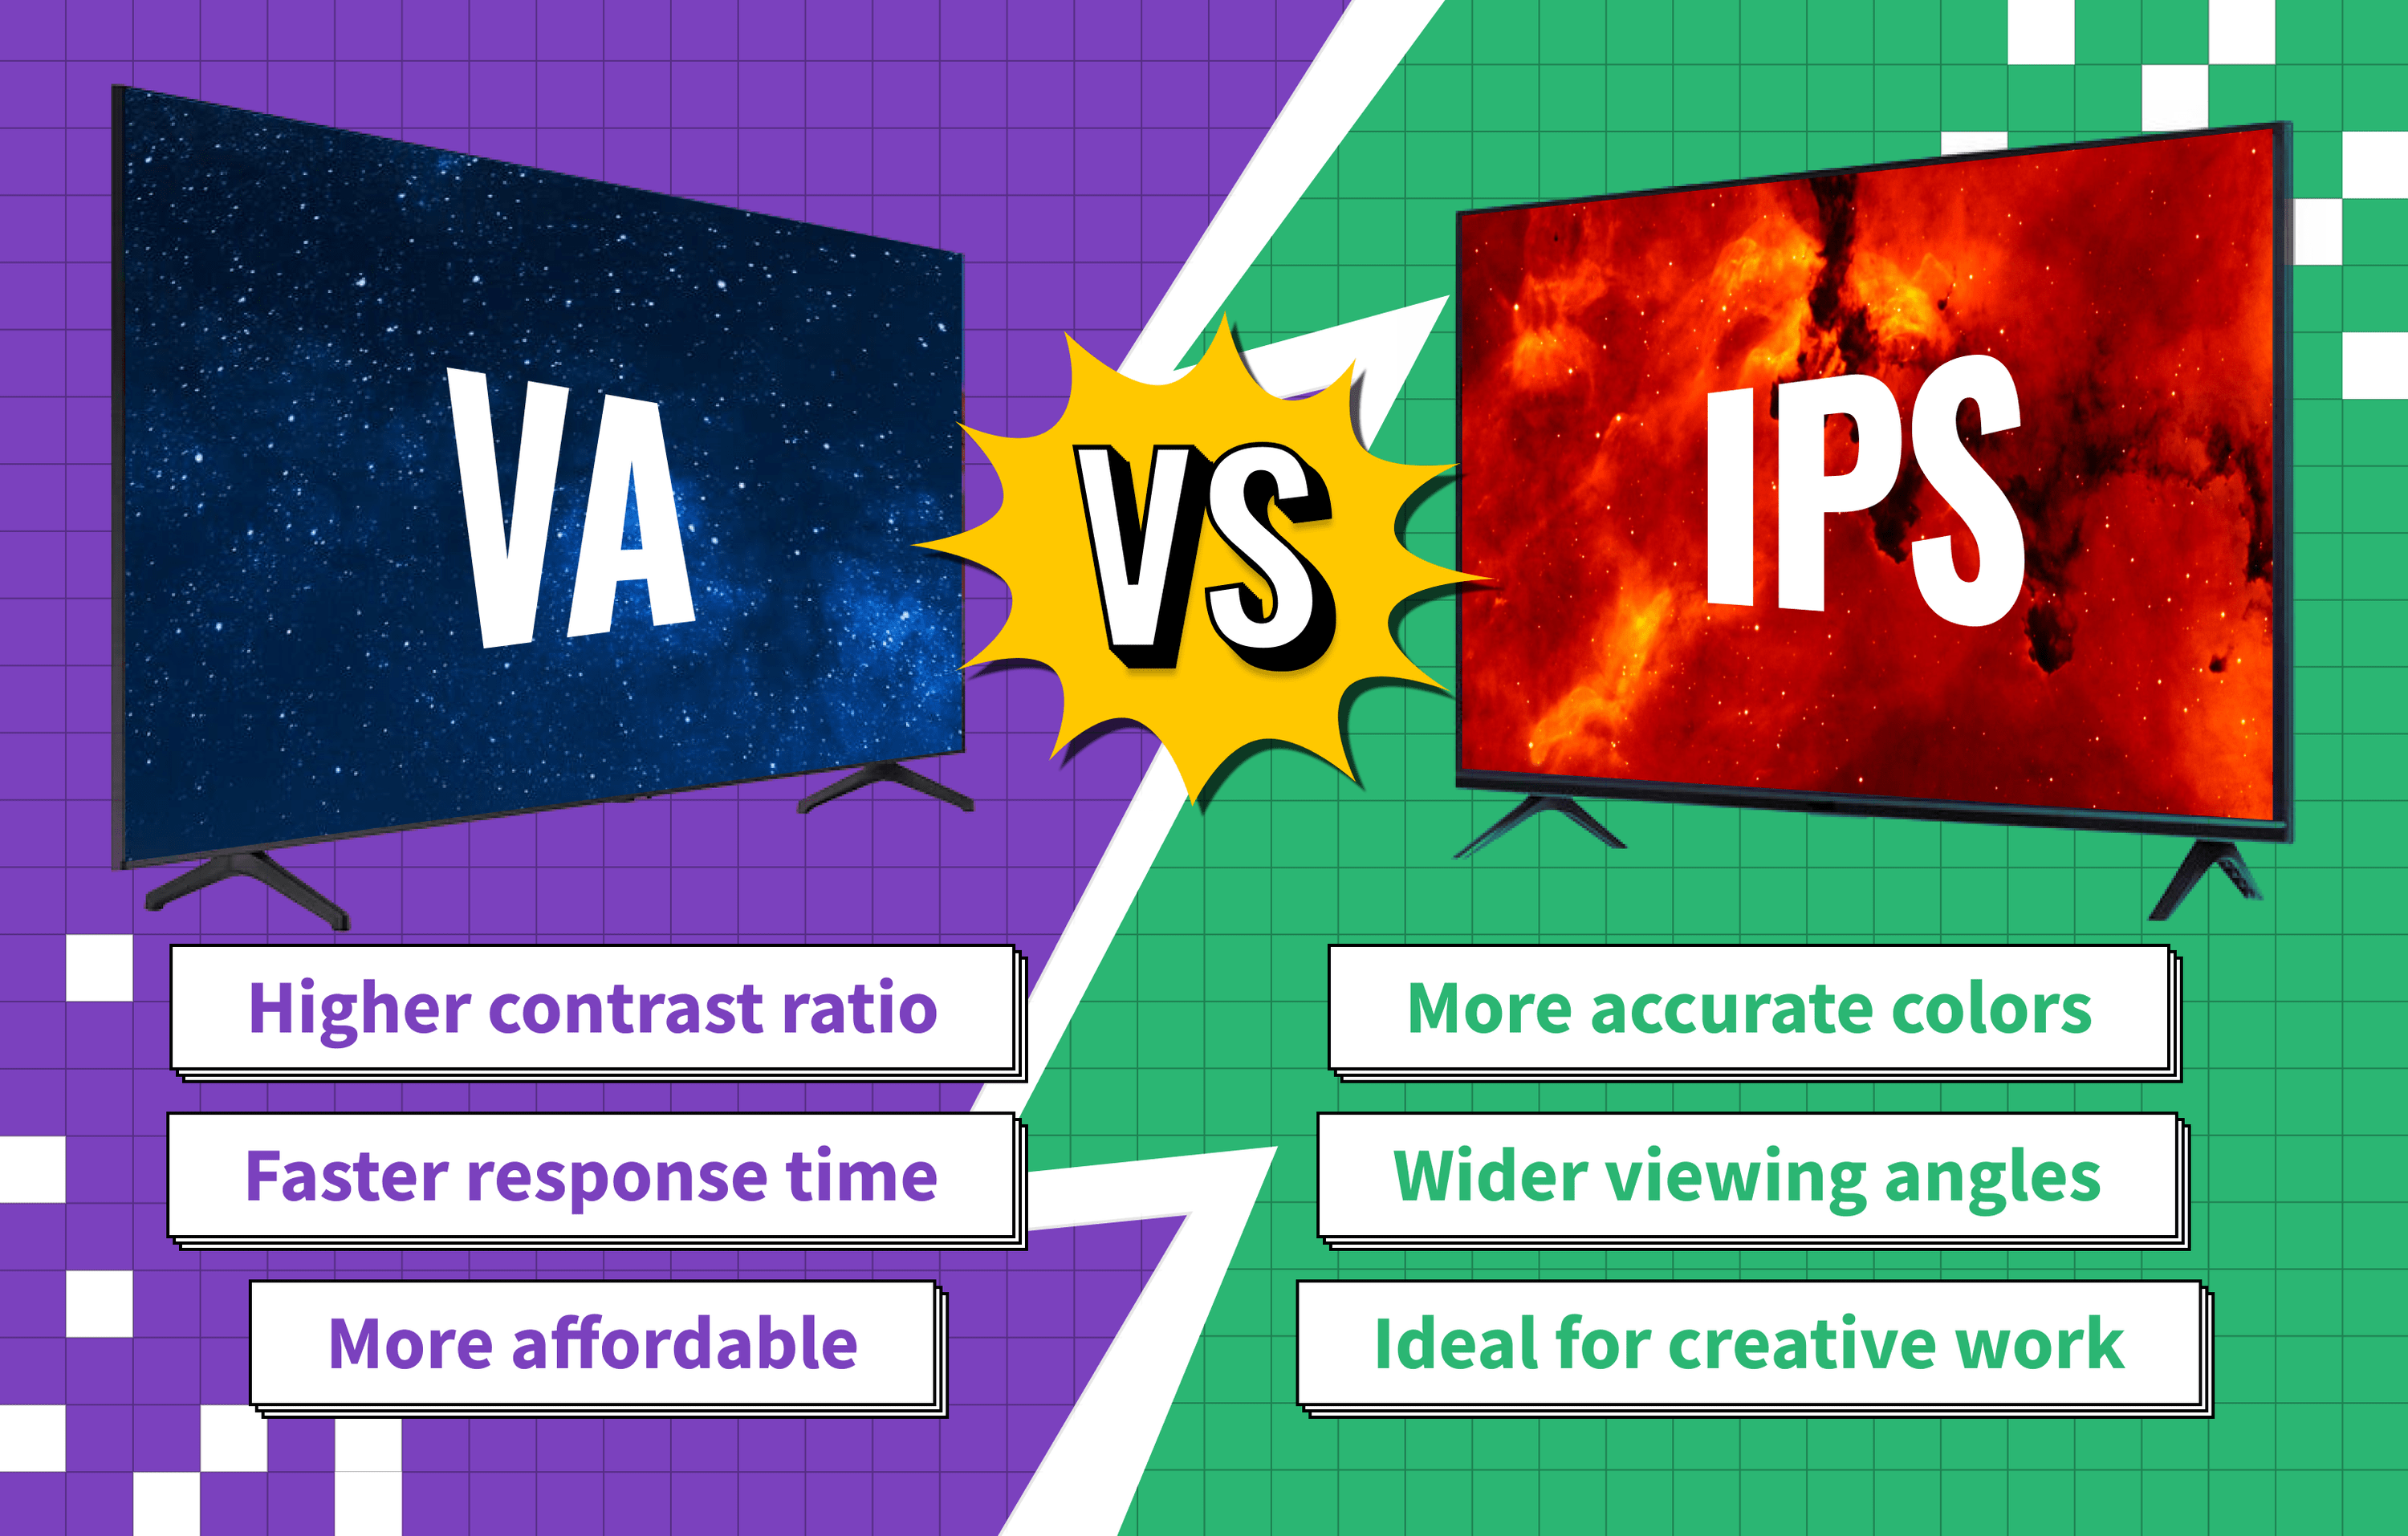 VA vs IPS Panel on a TV